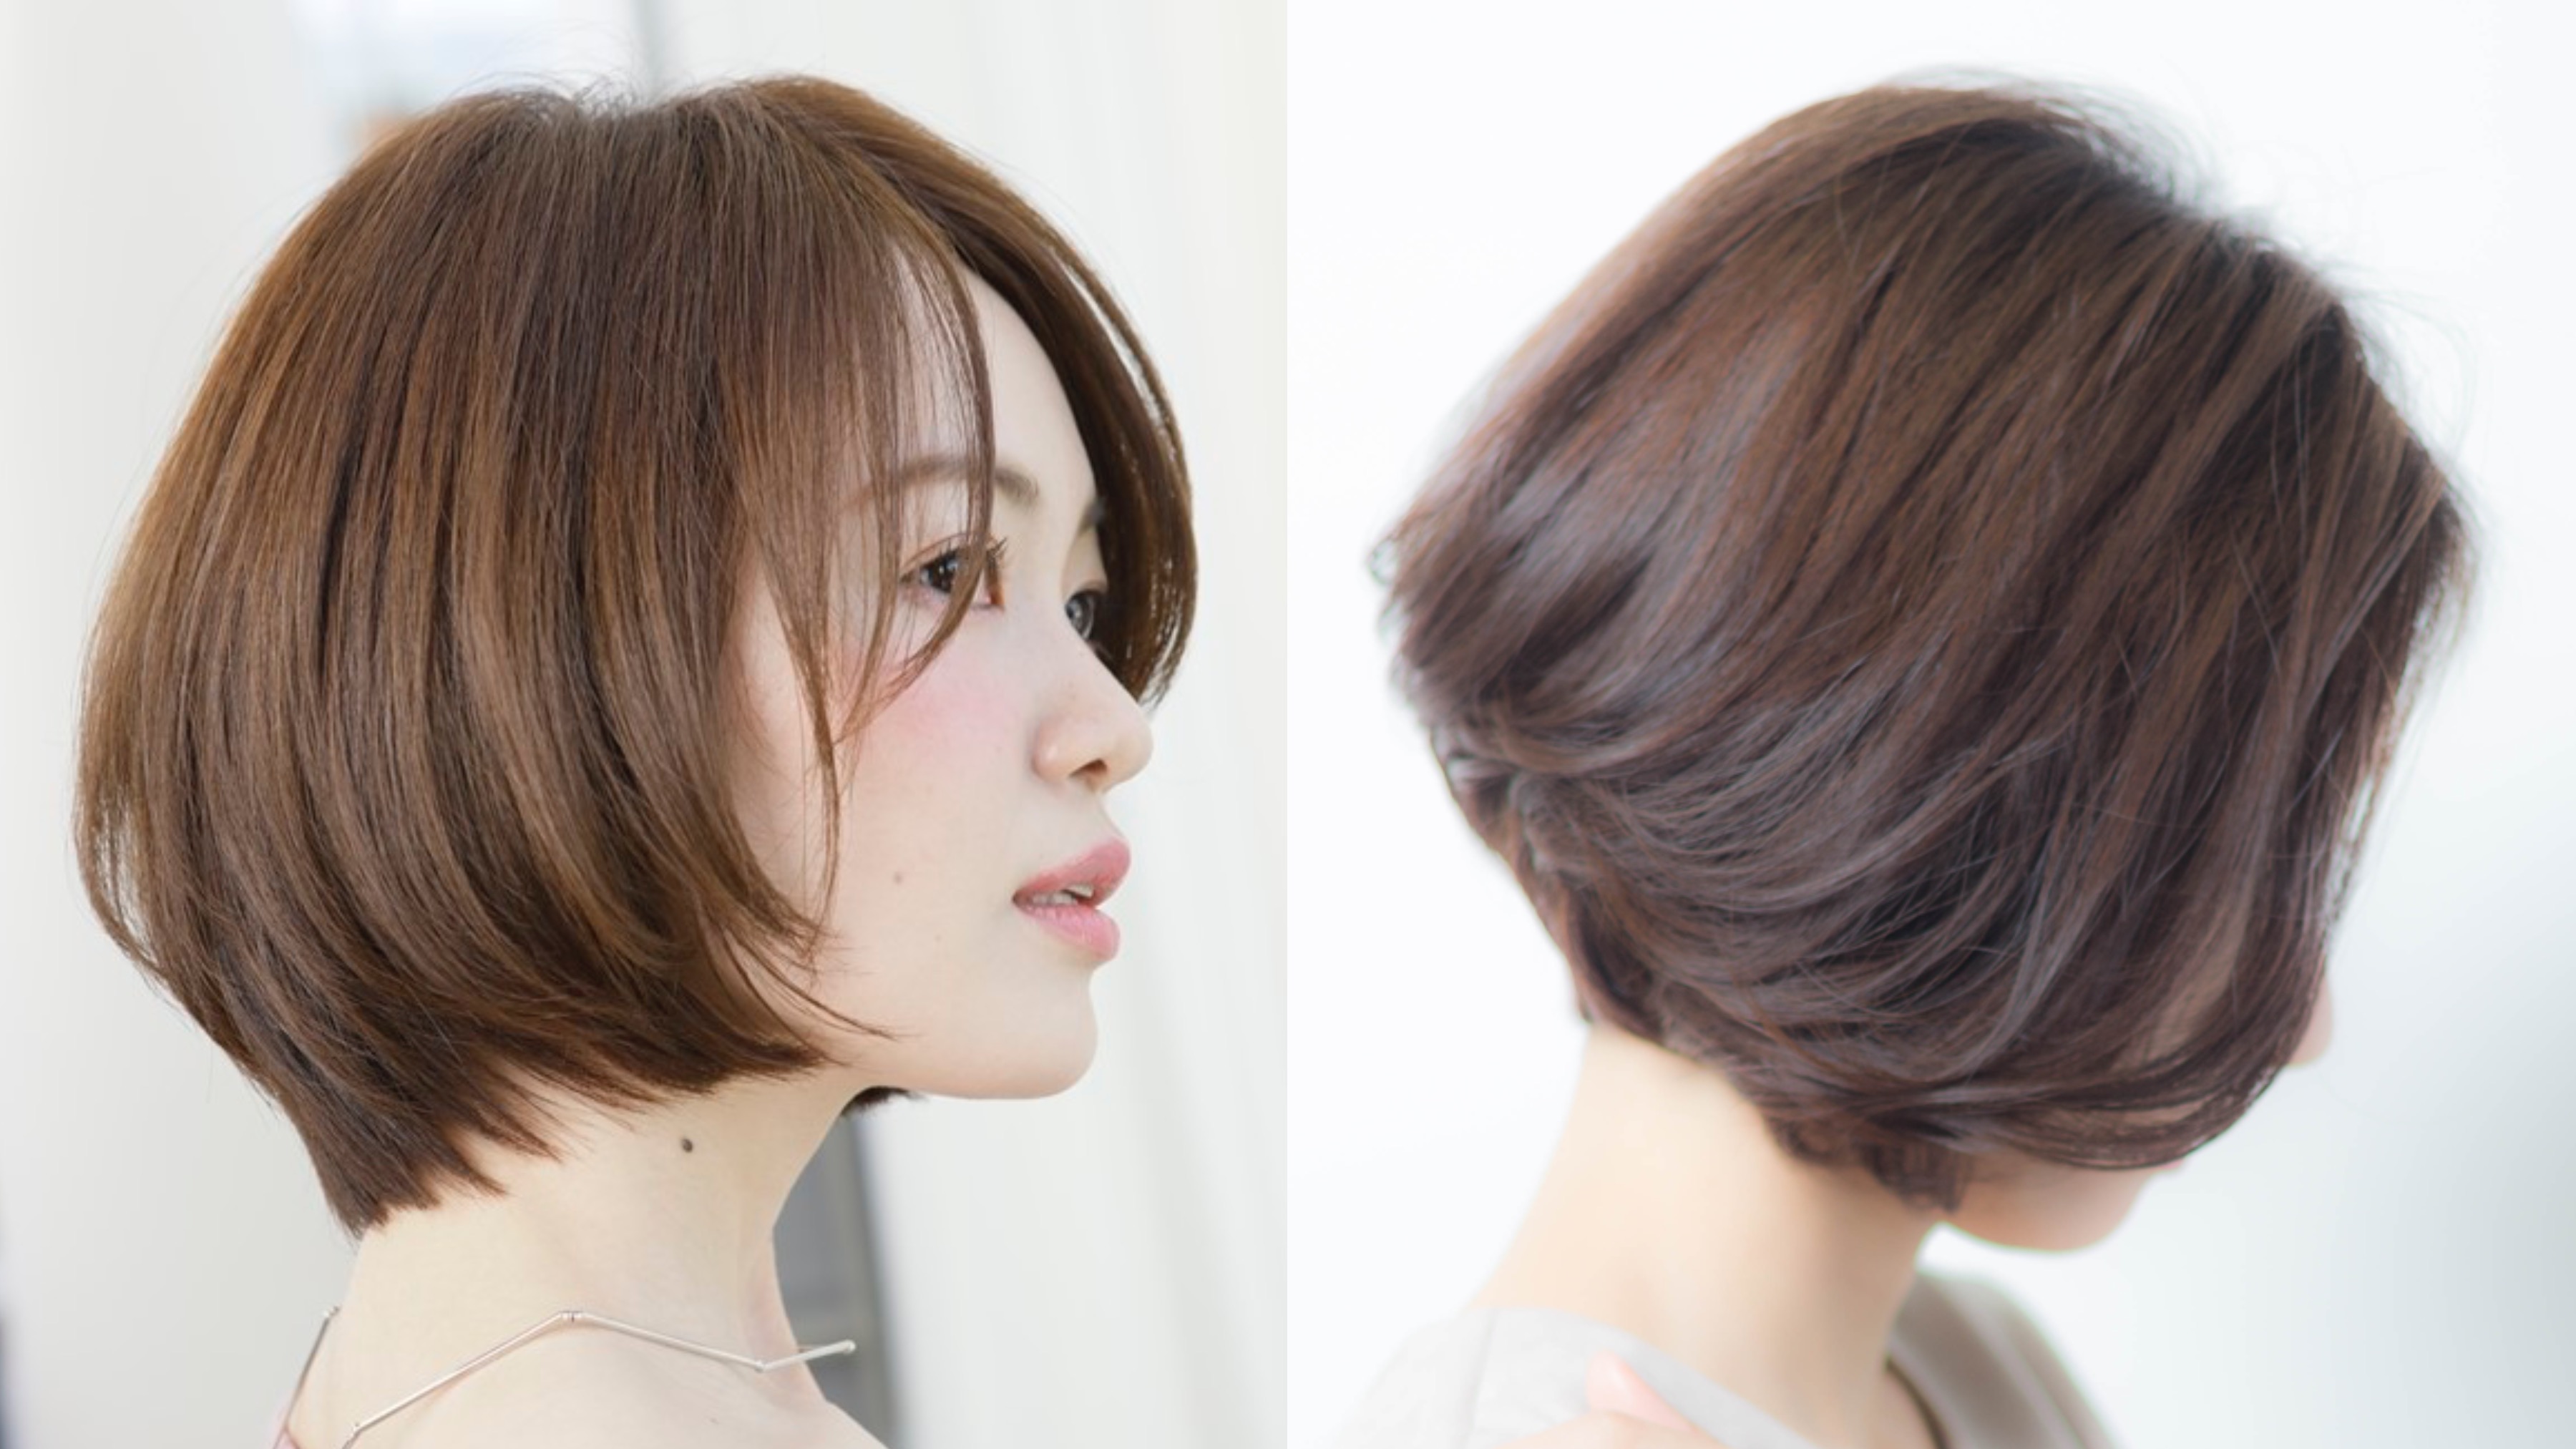 22年秋 40代の髪型のお悩みを 素敵に生かすボブのヘアカタログ 似合わせカットが上手い東京の美容師 美容室minx銀座 蛭田のブログ